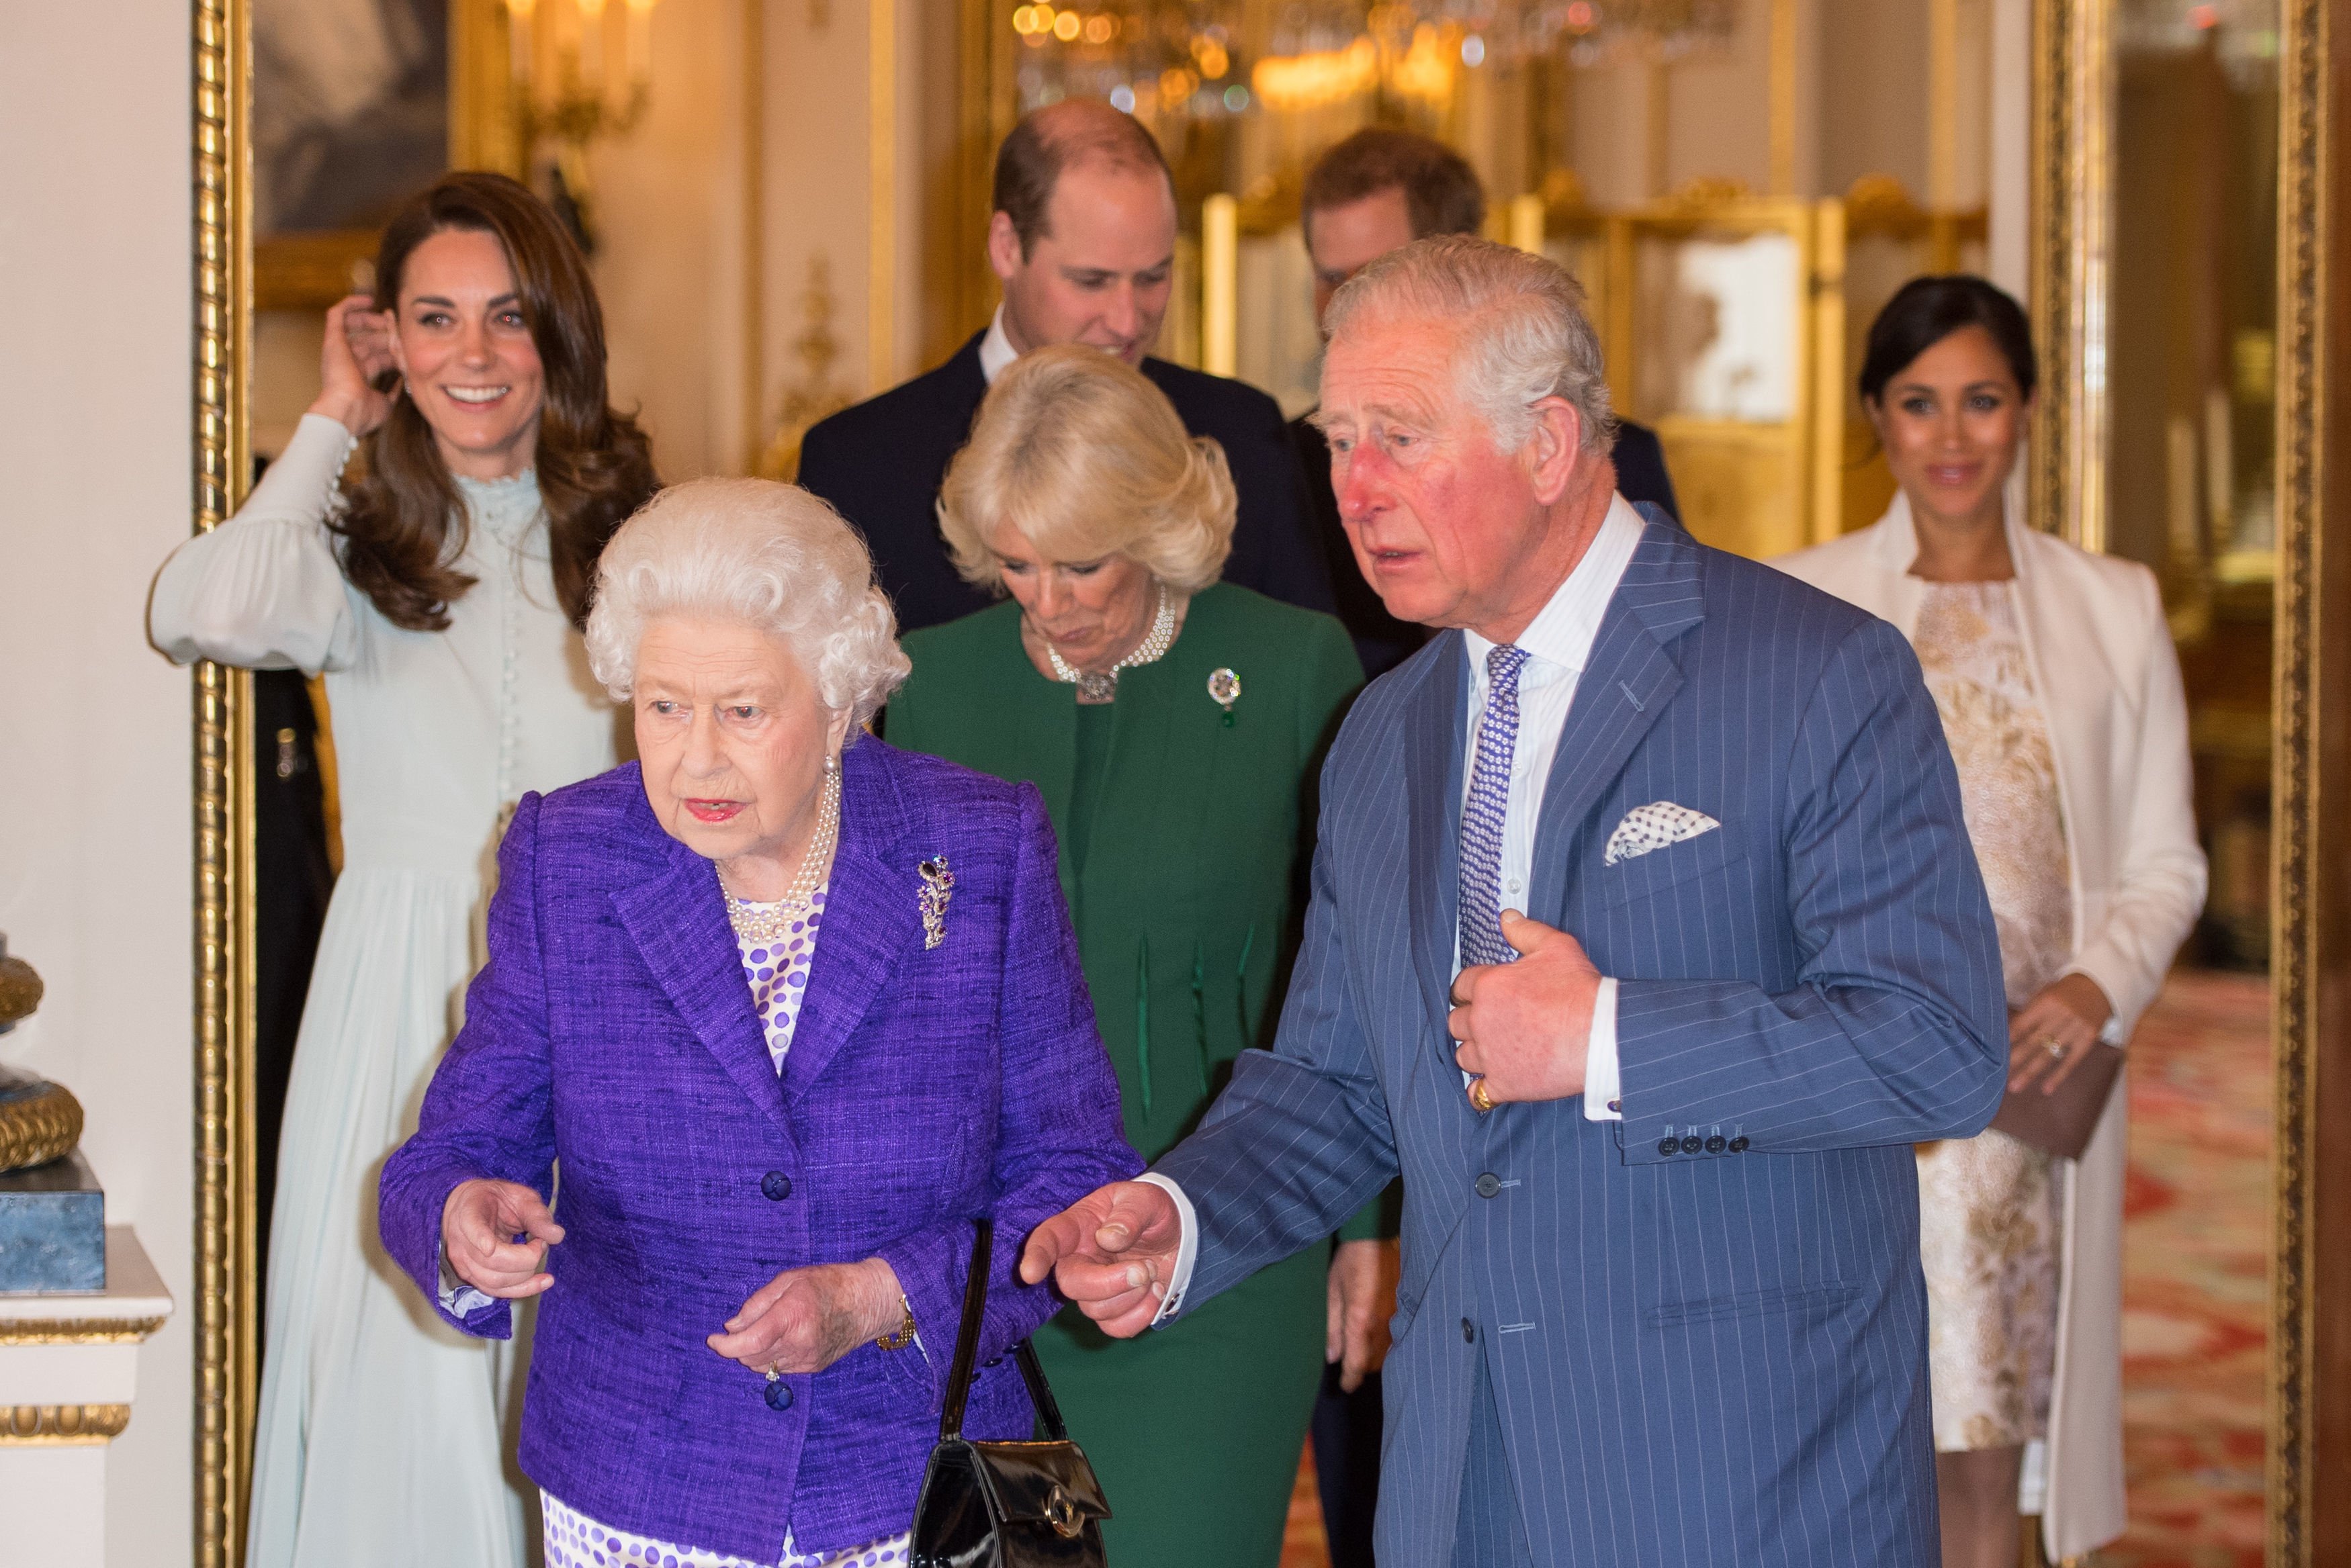 Des membres de la famille royale assistent à une réception pour marquer le 50e anniversaire de l'investiture du prince de Galles au palais de Buckingham à Londres le 5 mars 2019 | Source : Getty Images